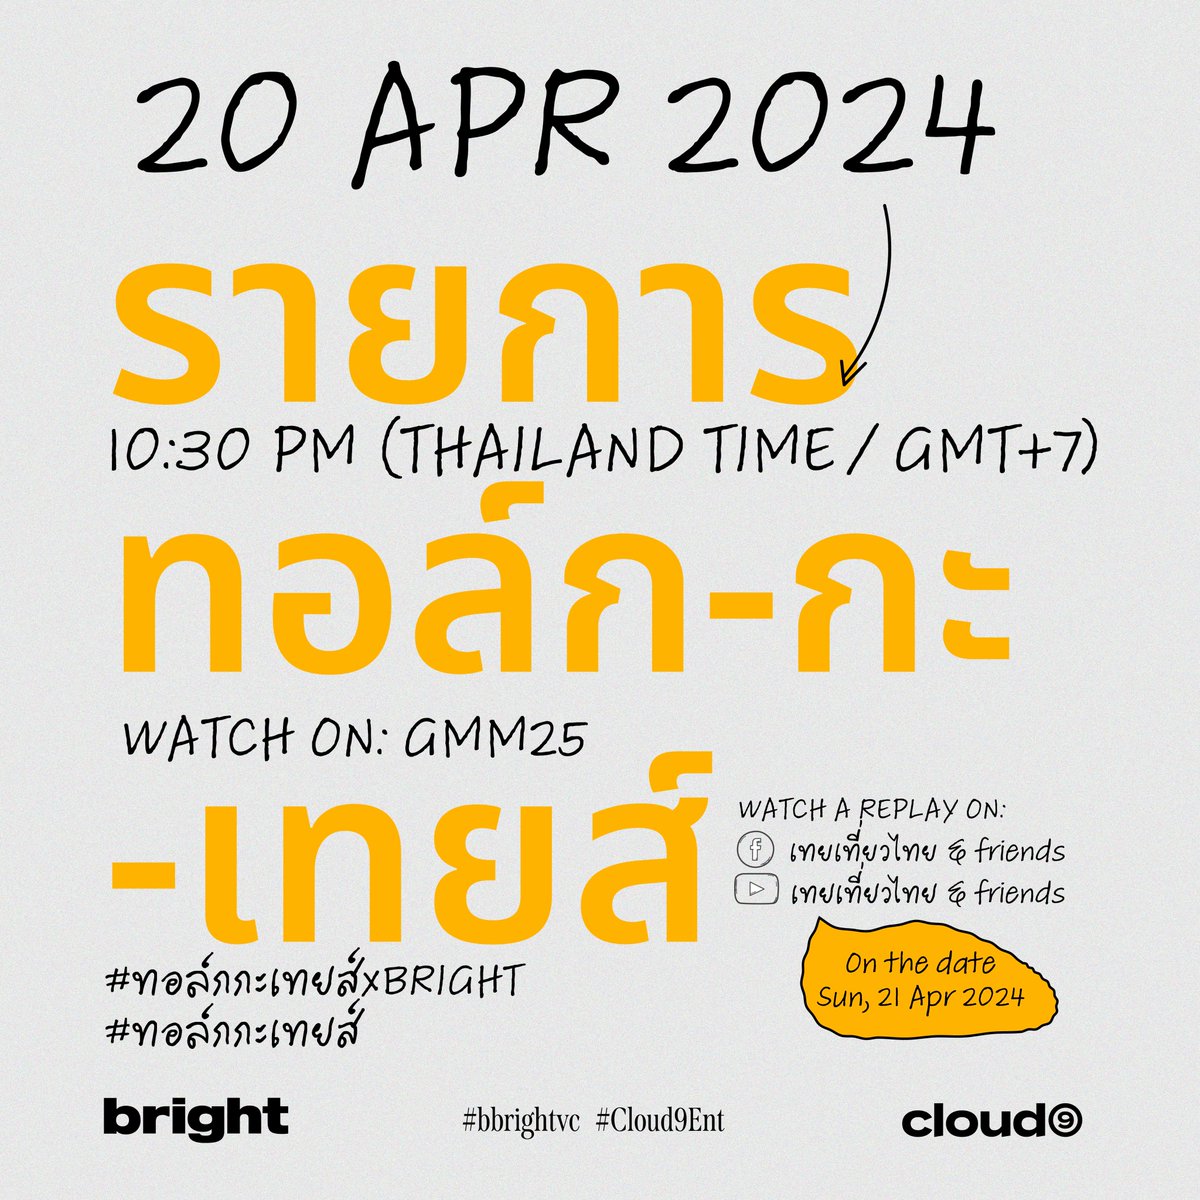 BRIGHT's SCHEDULE UPDATE
15 - 21 APR 2024

▪️ รายการทอล์ก-กะ-เทยส์
SAT, 20 APR 2024
10:30 PM (THAILAND TIME/GMT+7)

#BRIGHTsSchedule
#bbrightvc
#Cloud9Ent